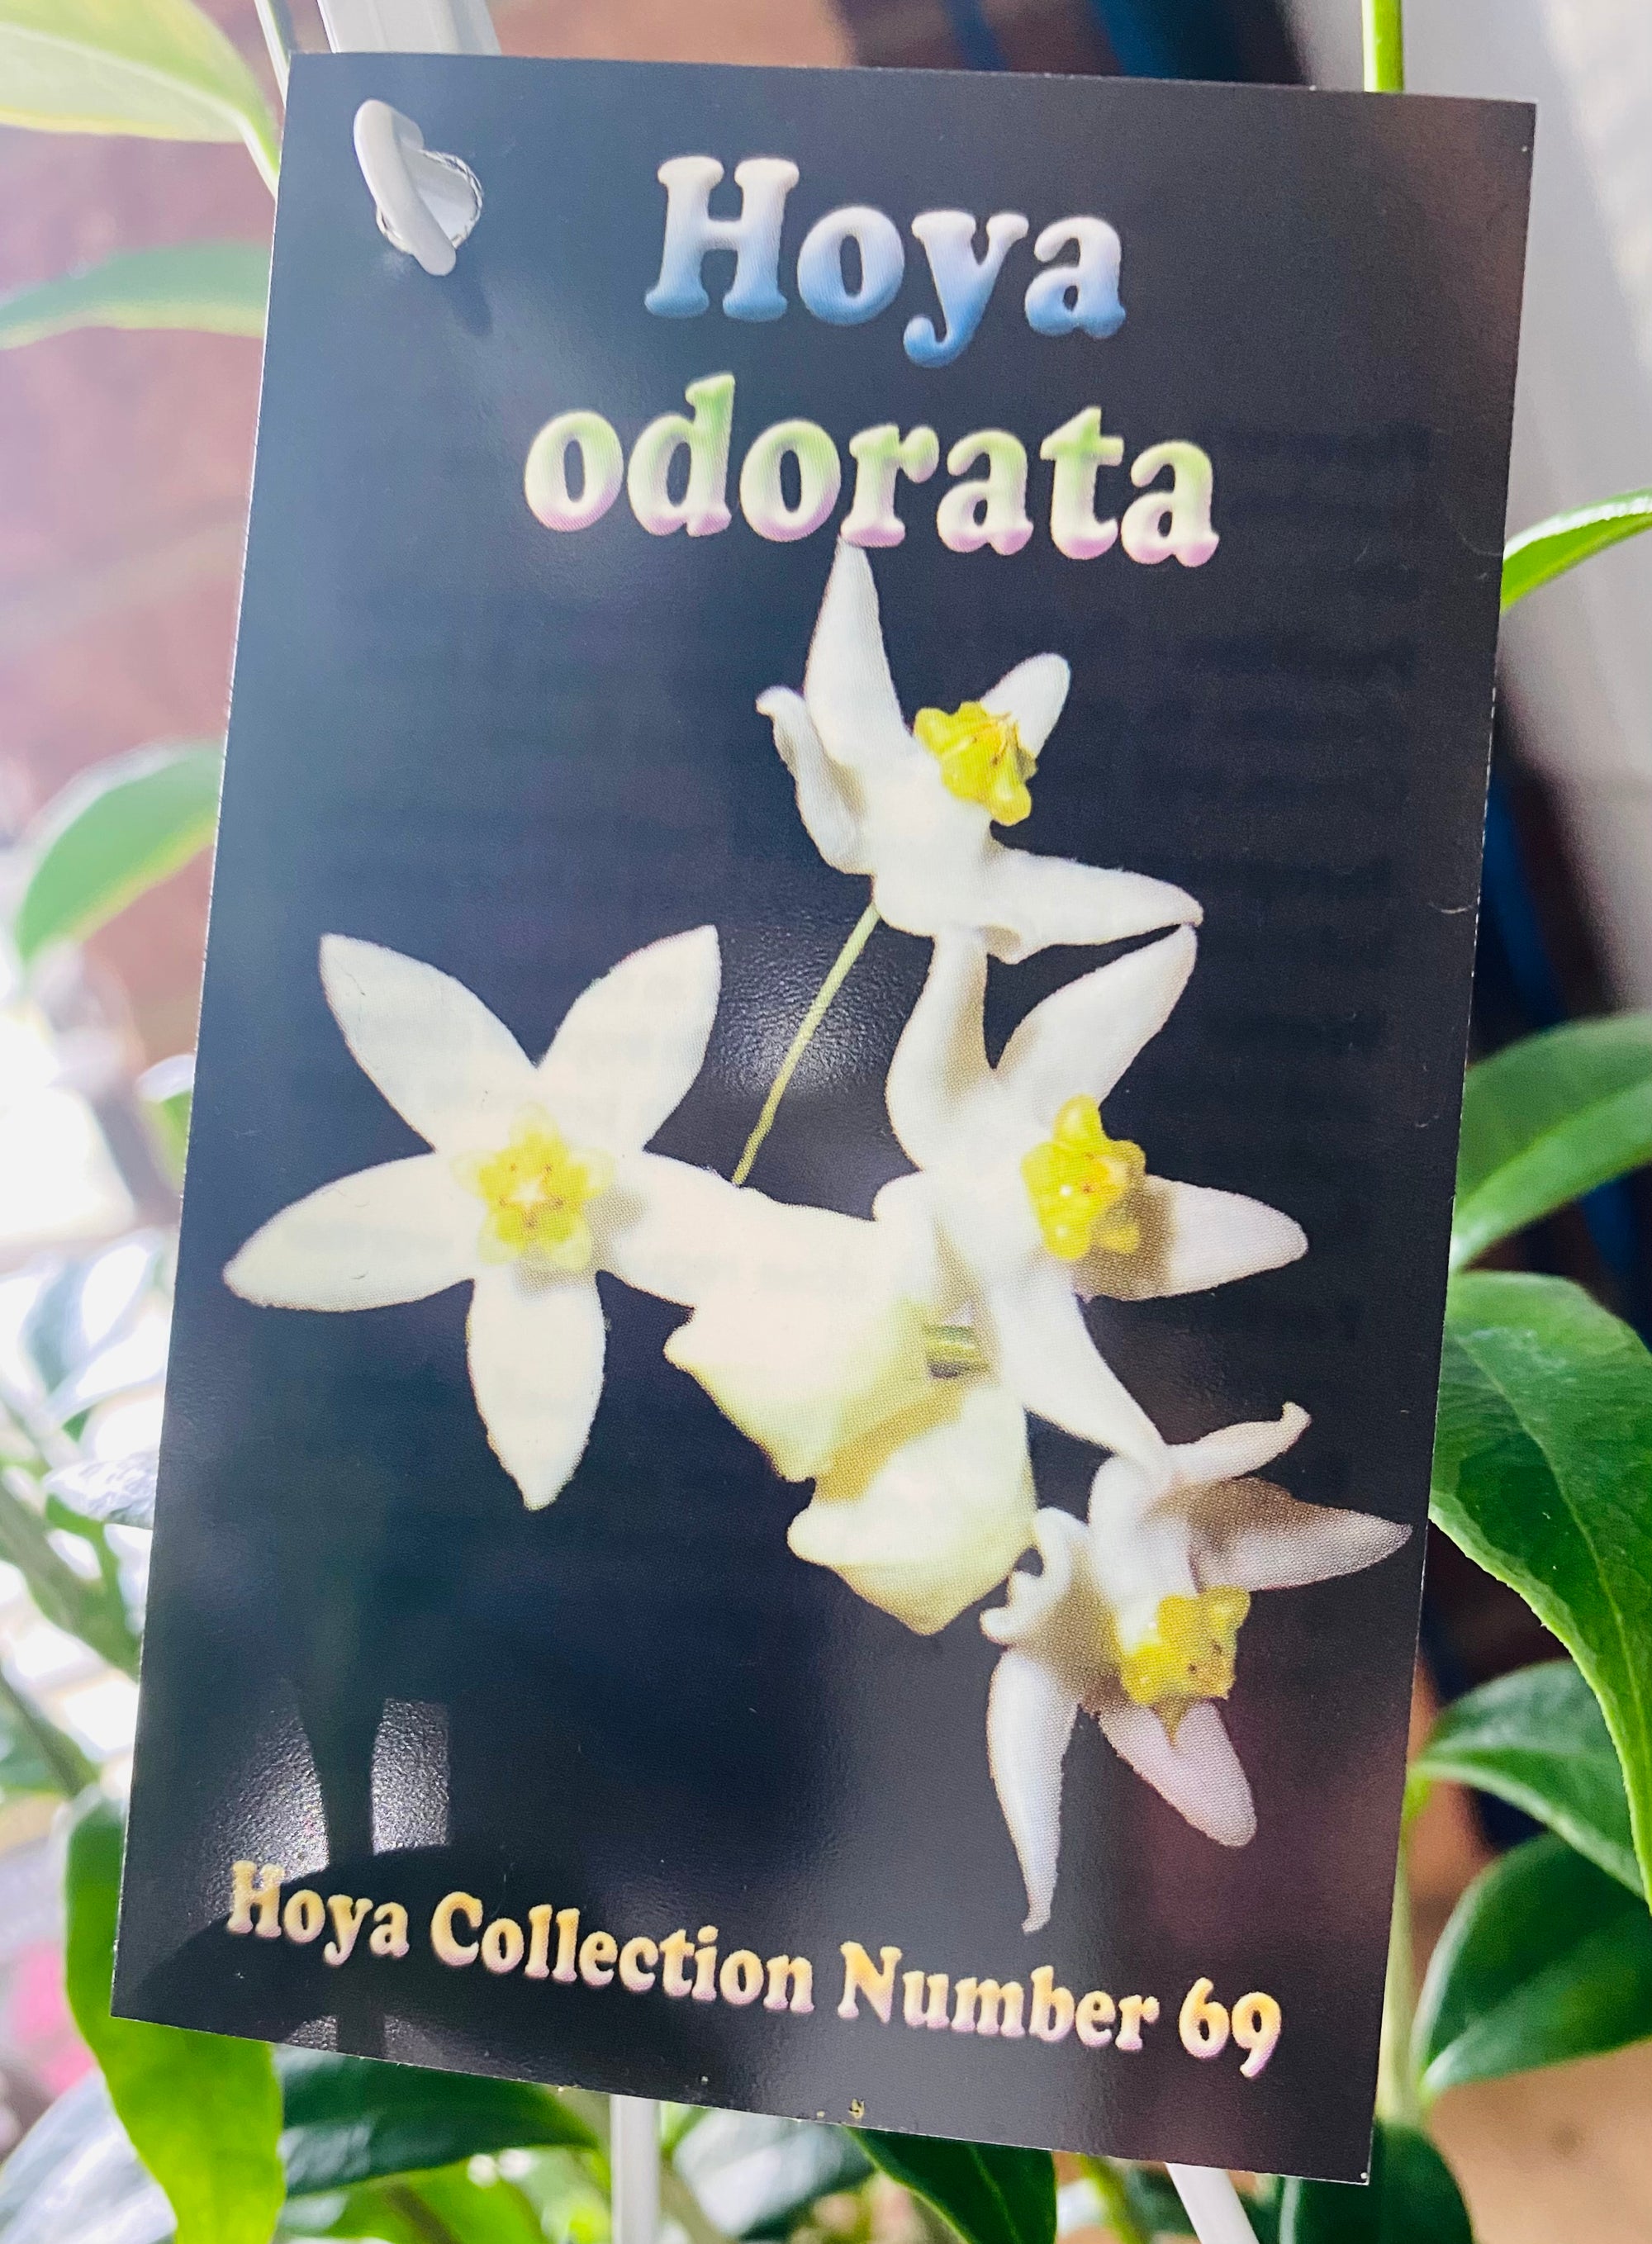 Hoya - Odorata Collection No. 69